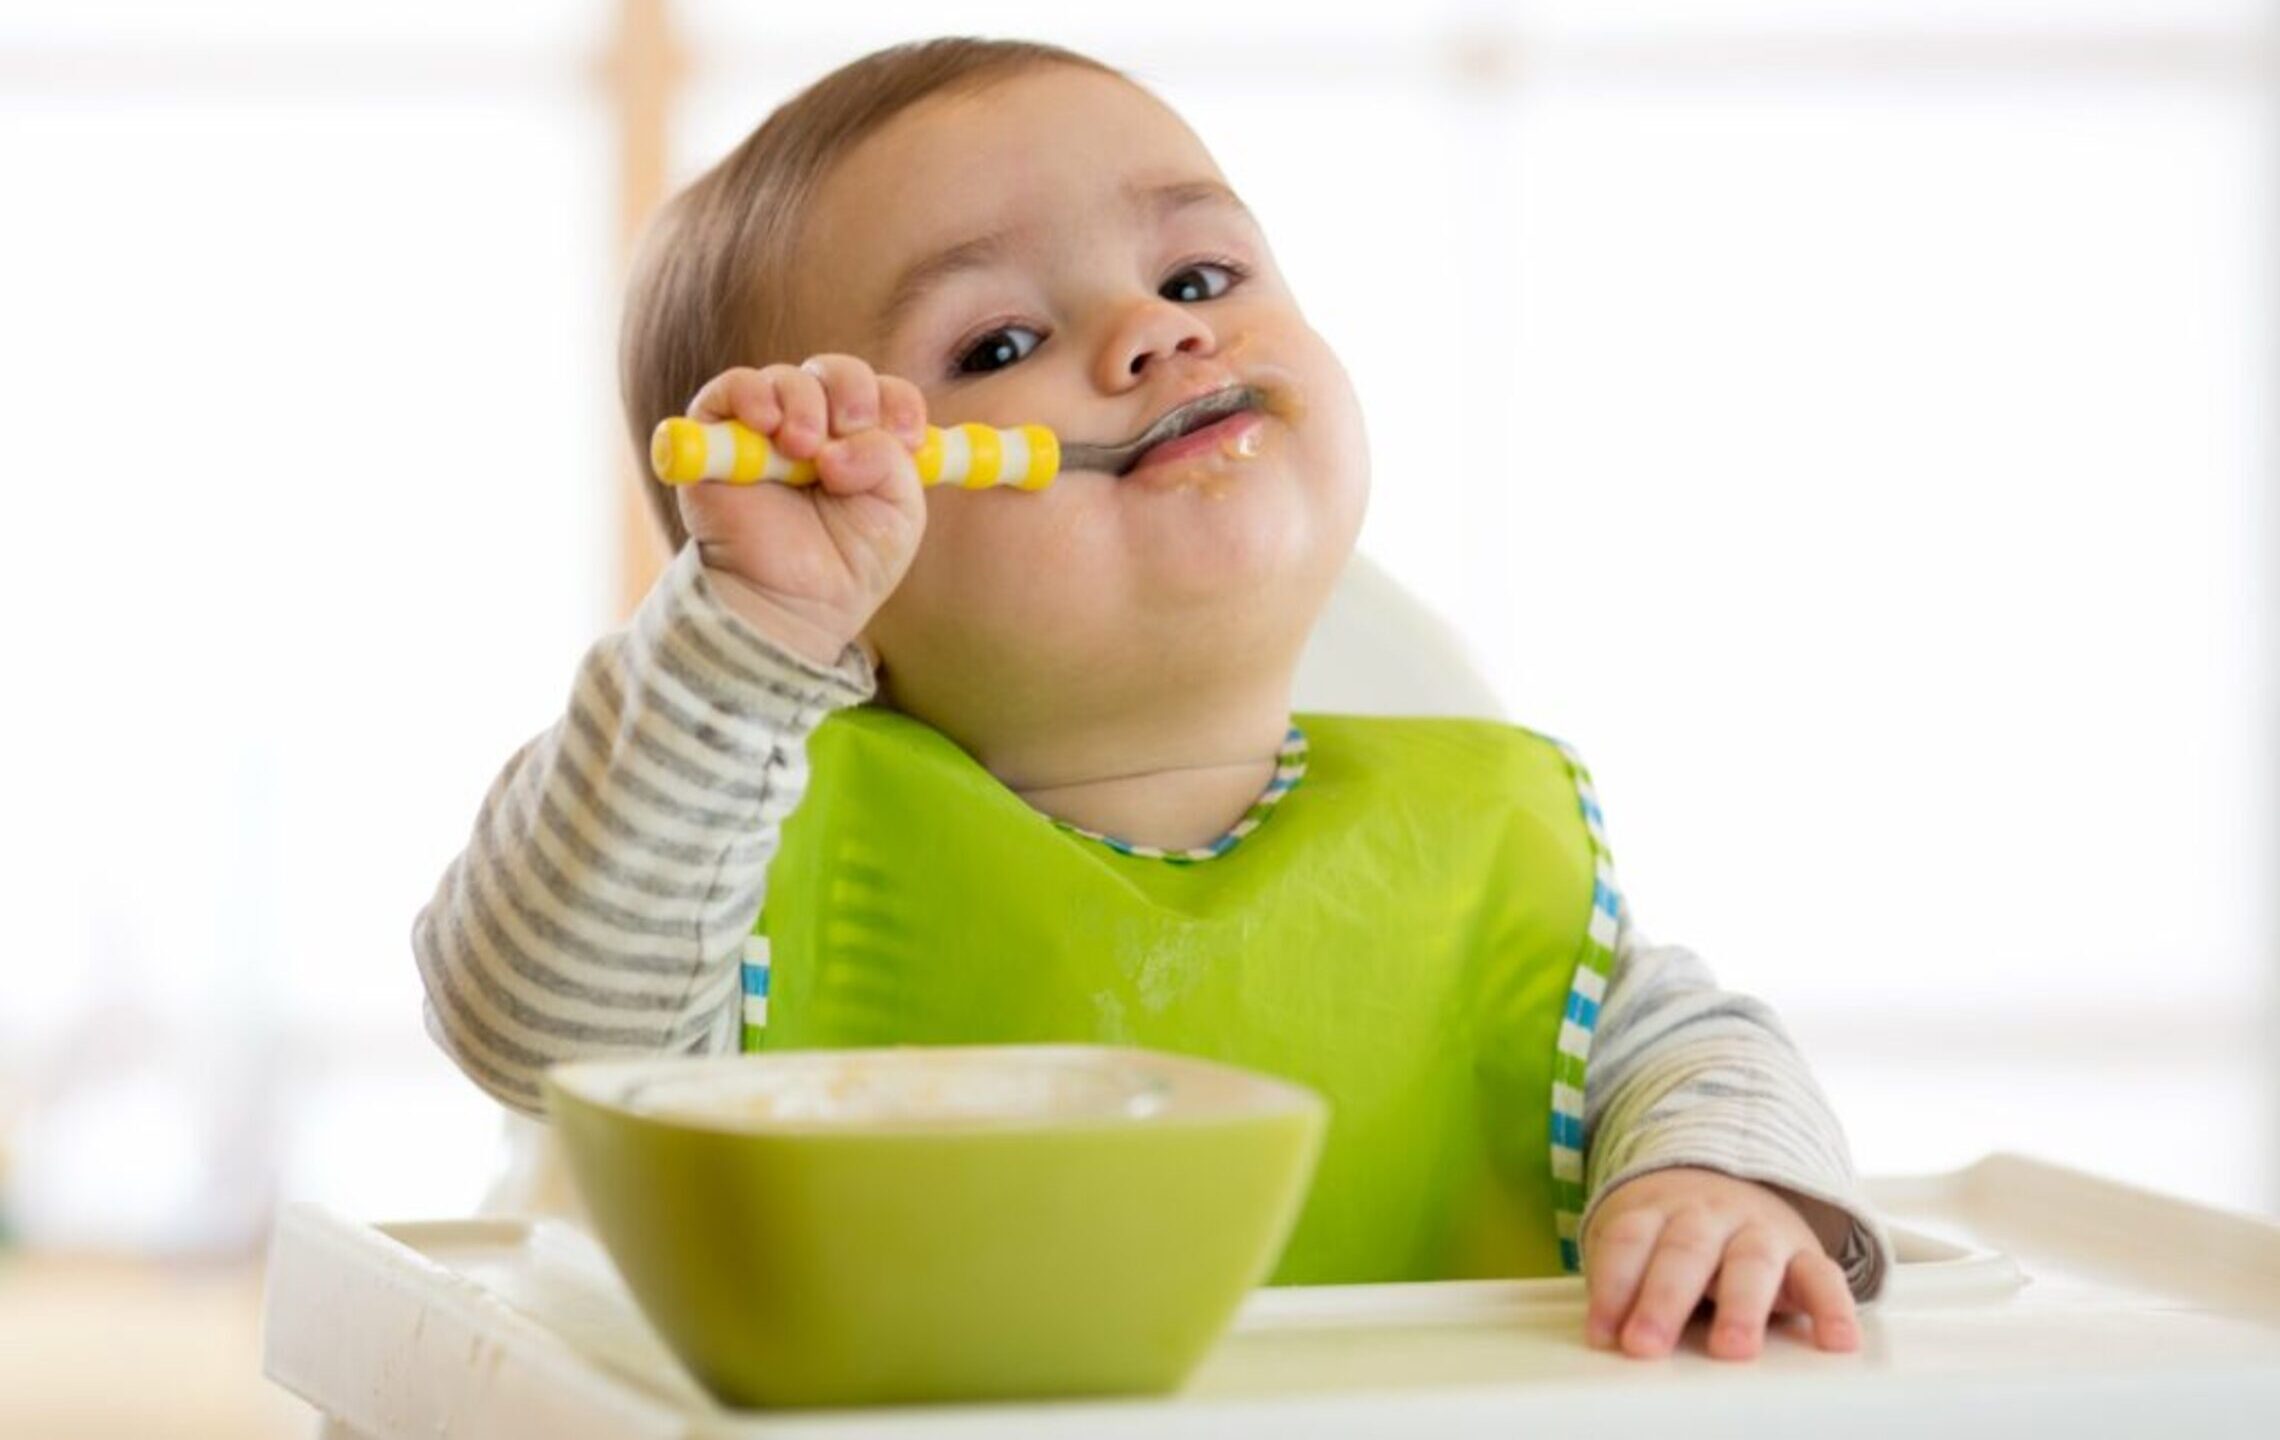 Quoi et combien? – Bébé mange seul